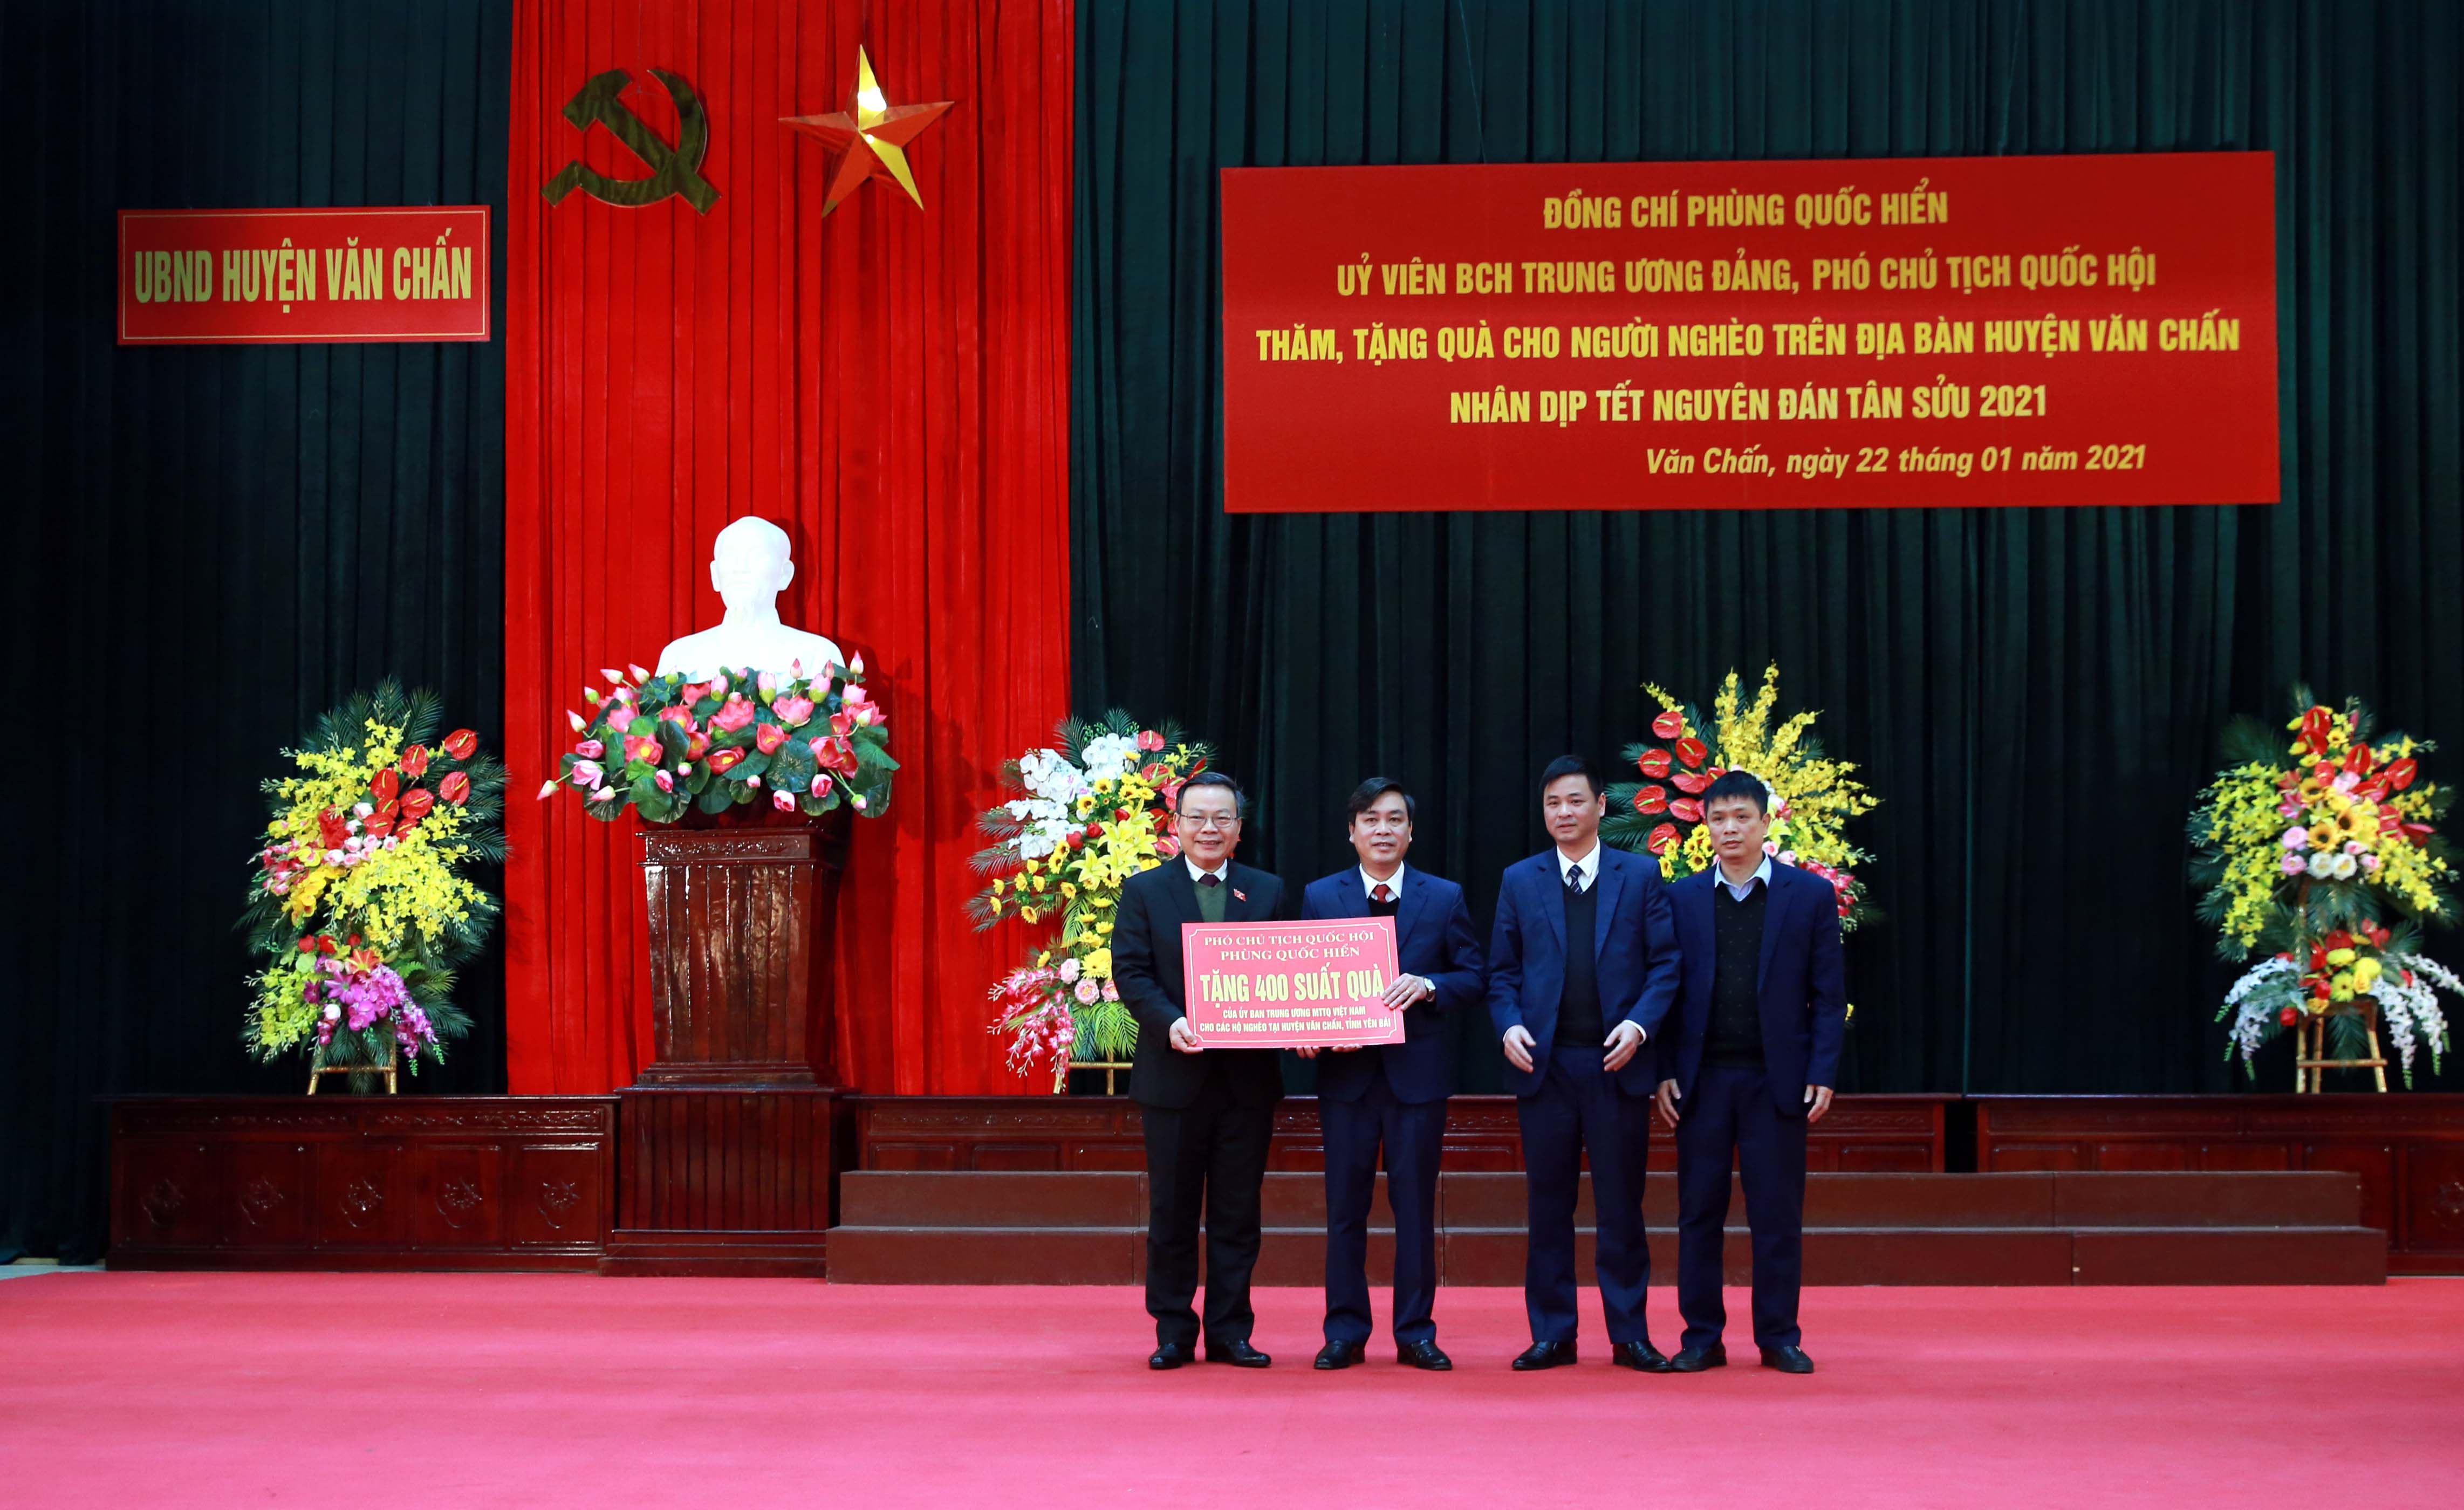 Phó Chủ tịch Quốc hội Phùng Quốc Hiển tặng 400 phần quà cho các hộ nghèo, gia đình chính sách trên địa bàn huyện Văn Chấn tỉnh Yên Bái